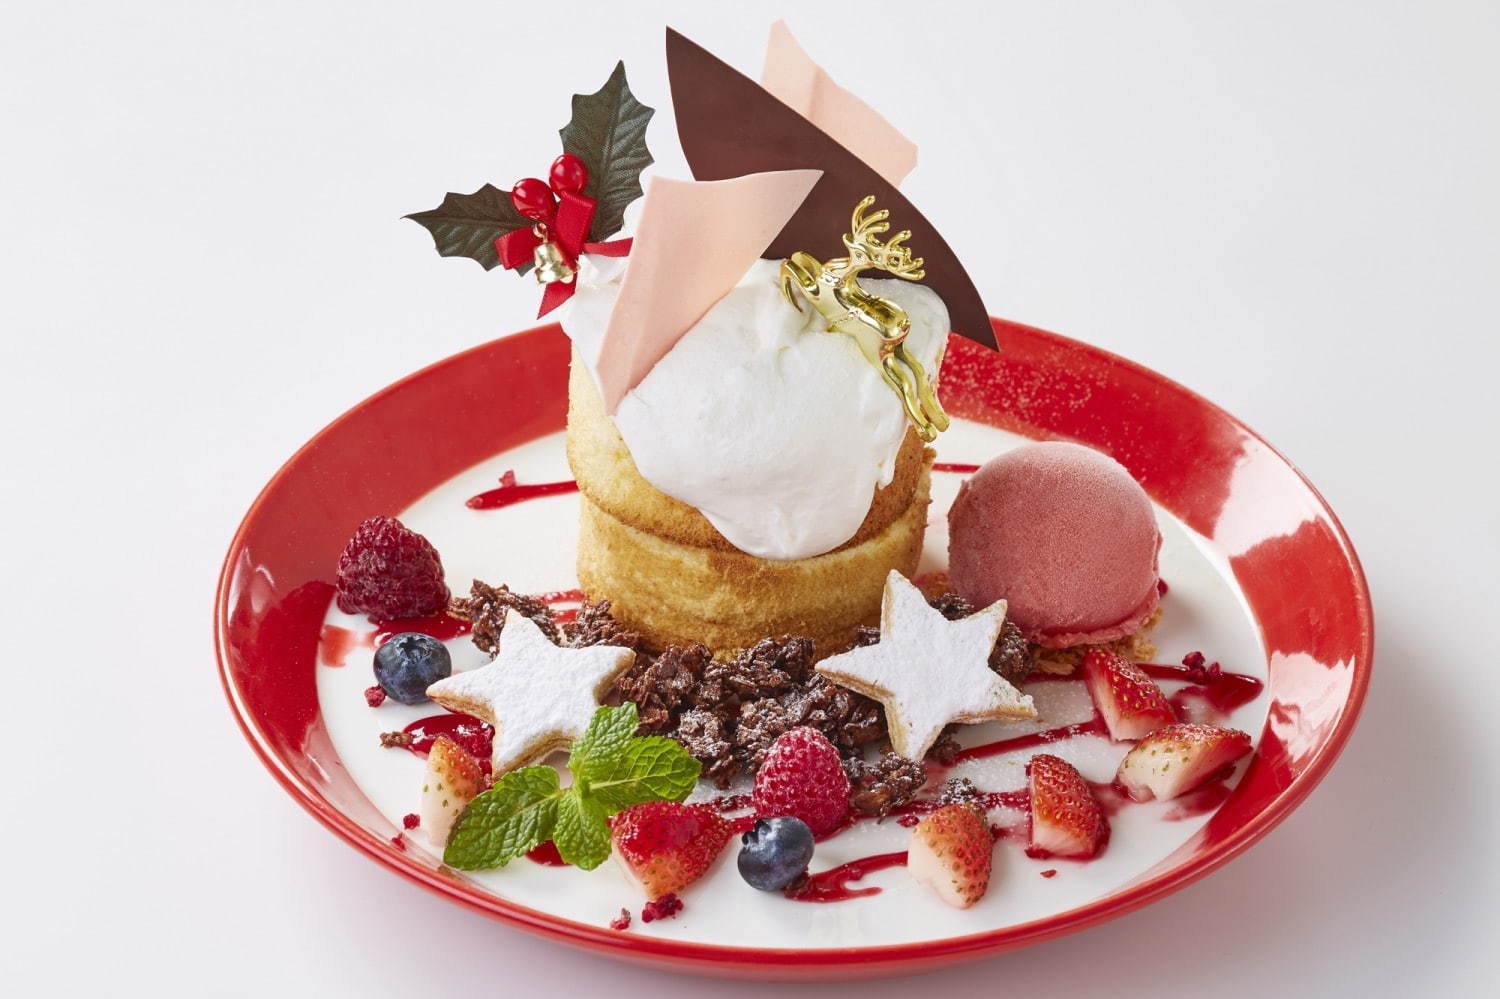 パンケーキ専門店 バター クリスマス限定パンケーキ ツリー型 抹茶クリーム 鮮やかフルーツを添えて ファッションプレス